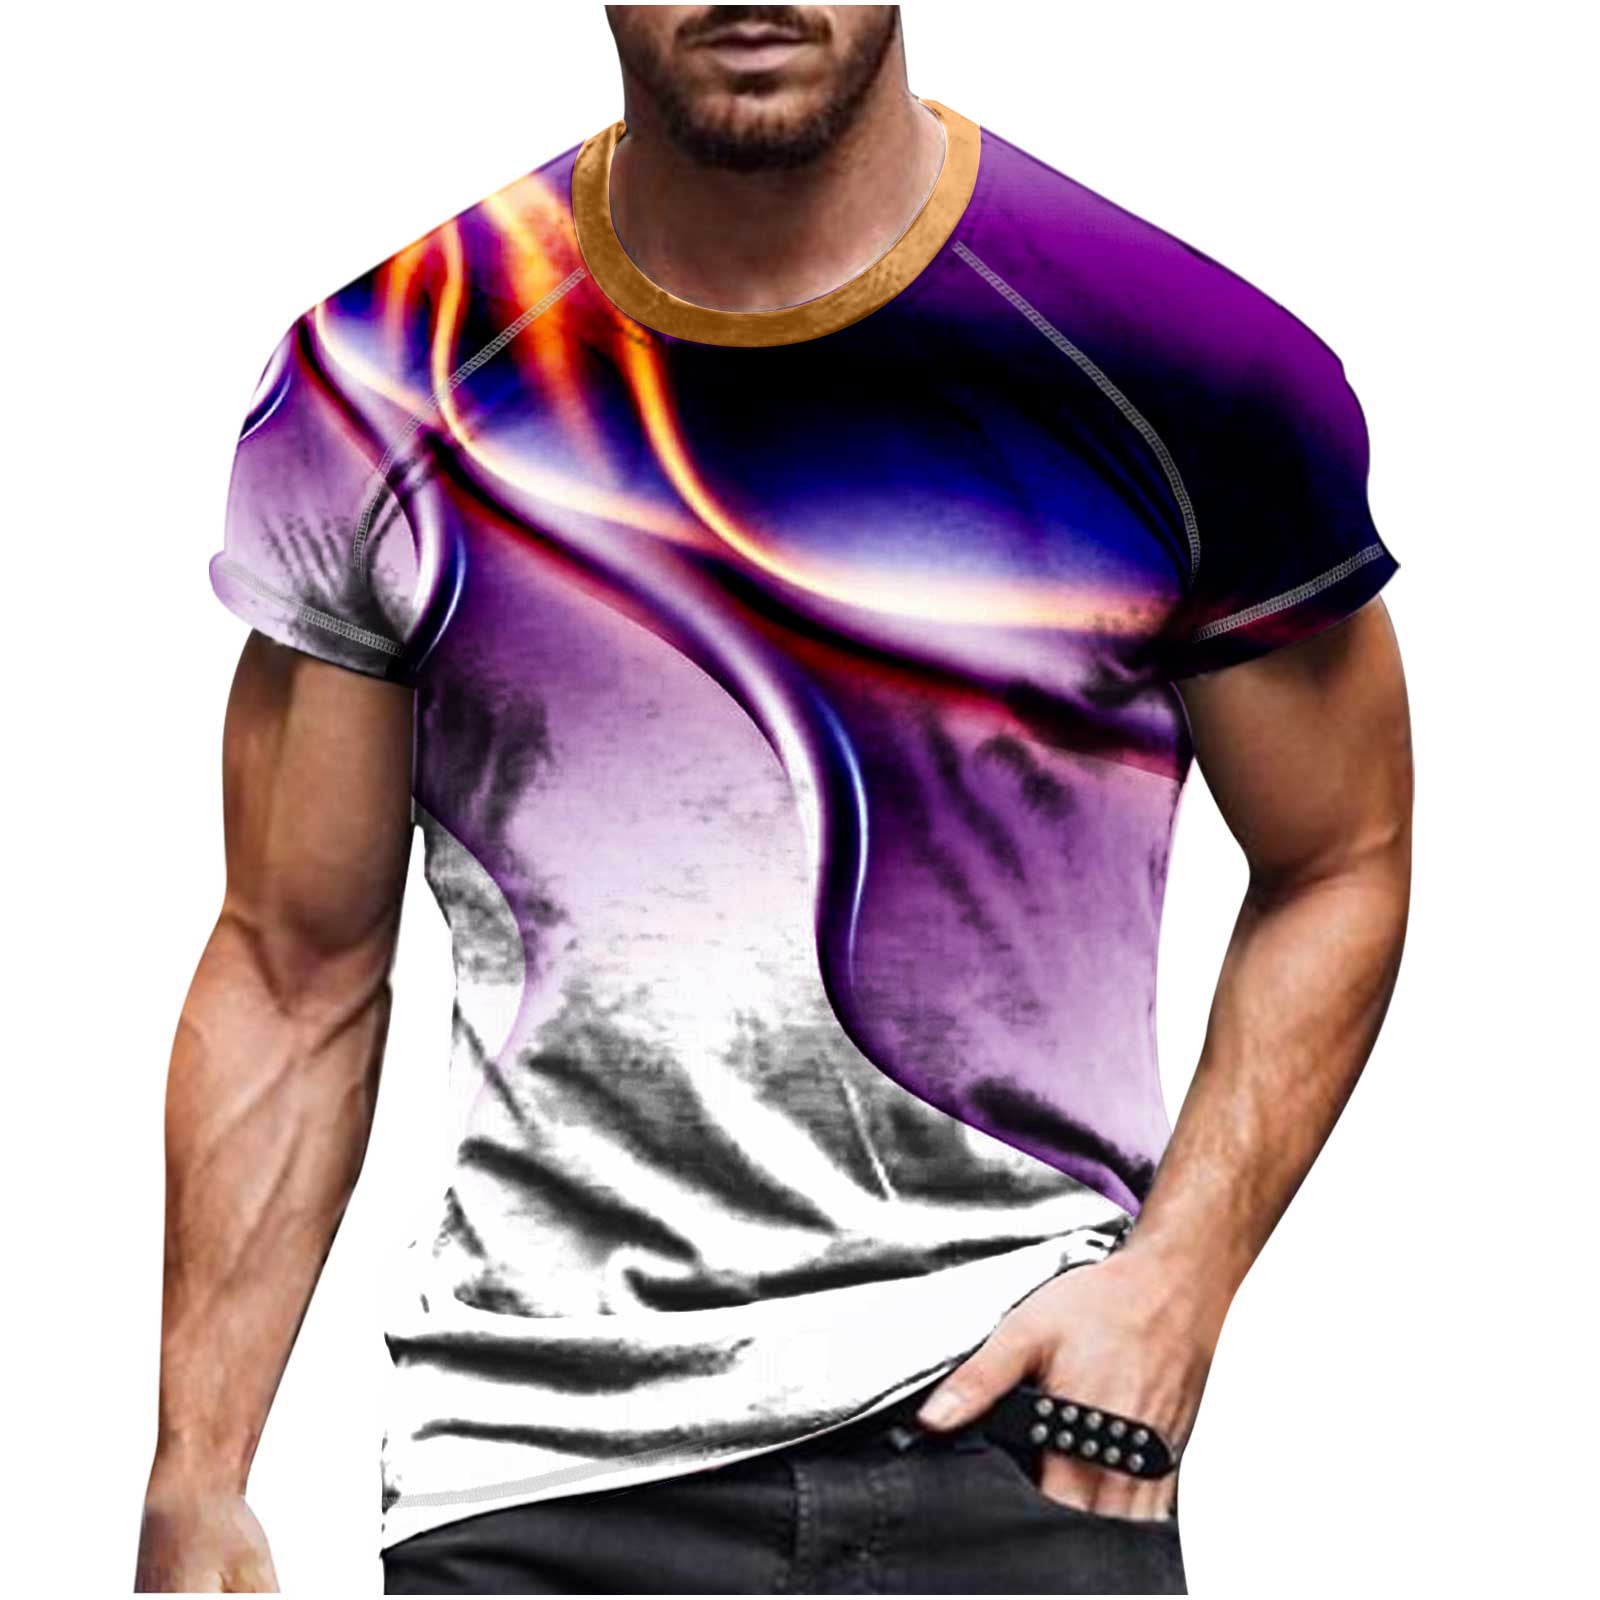 T Shirts For Men - Shop Men's T Shirts Online